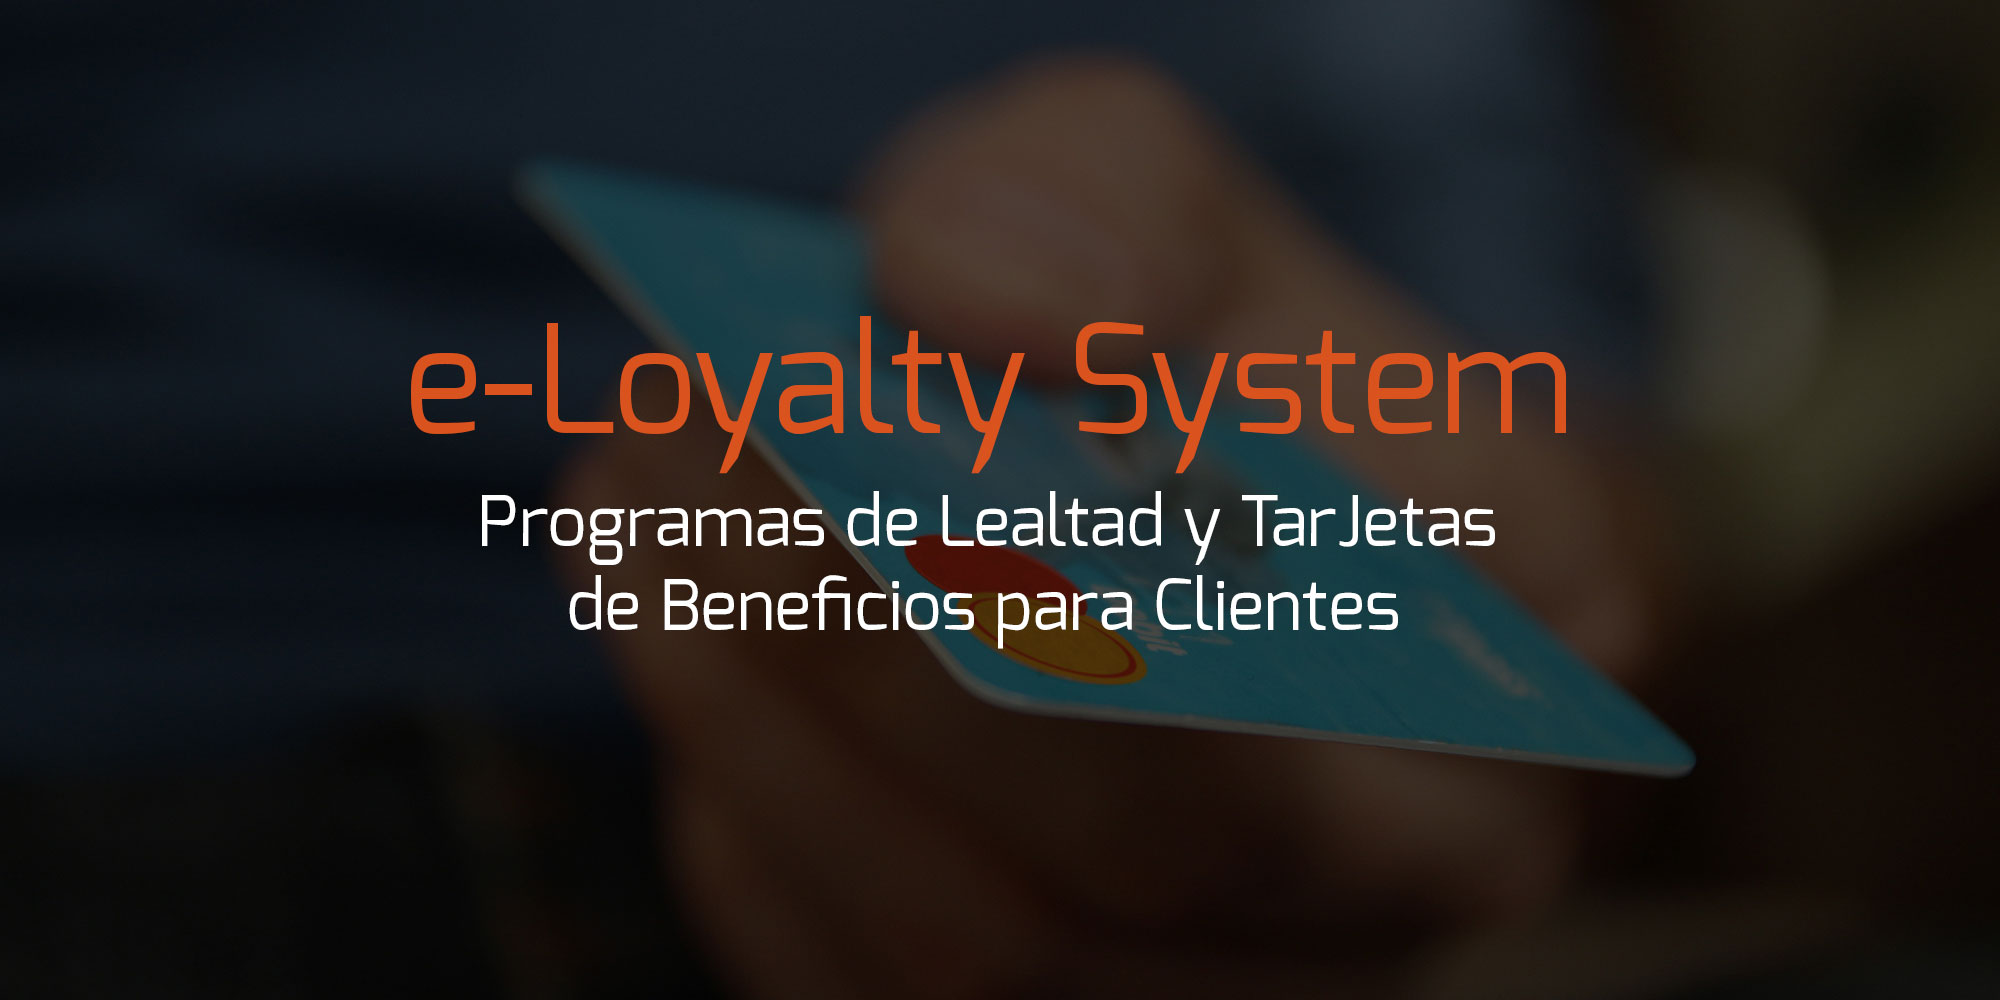 e-Loyalty System